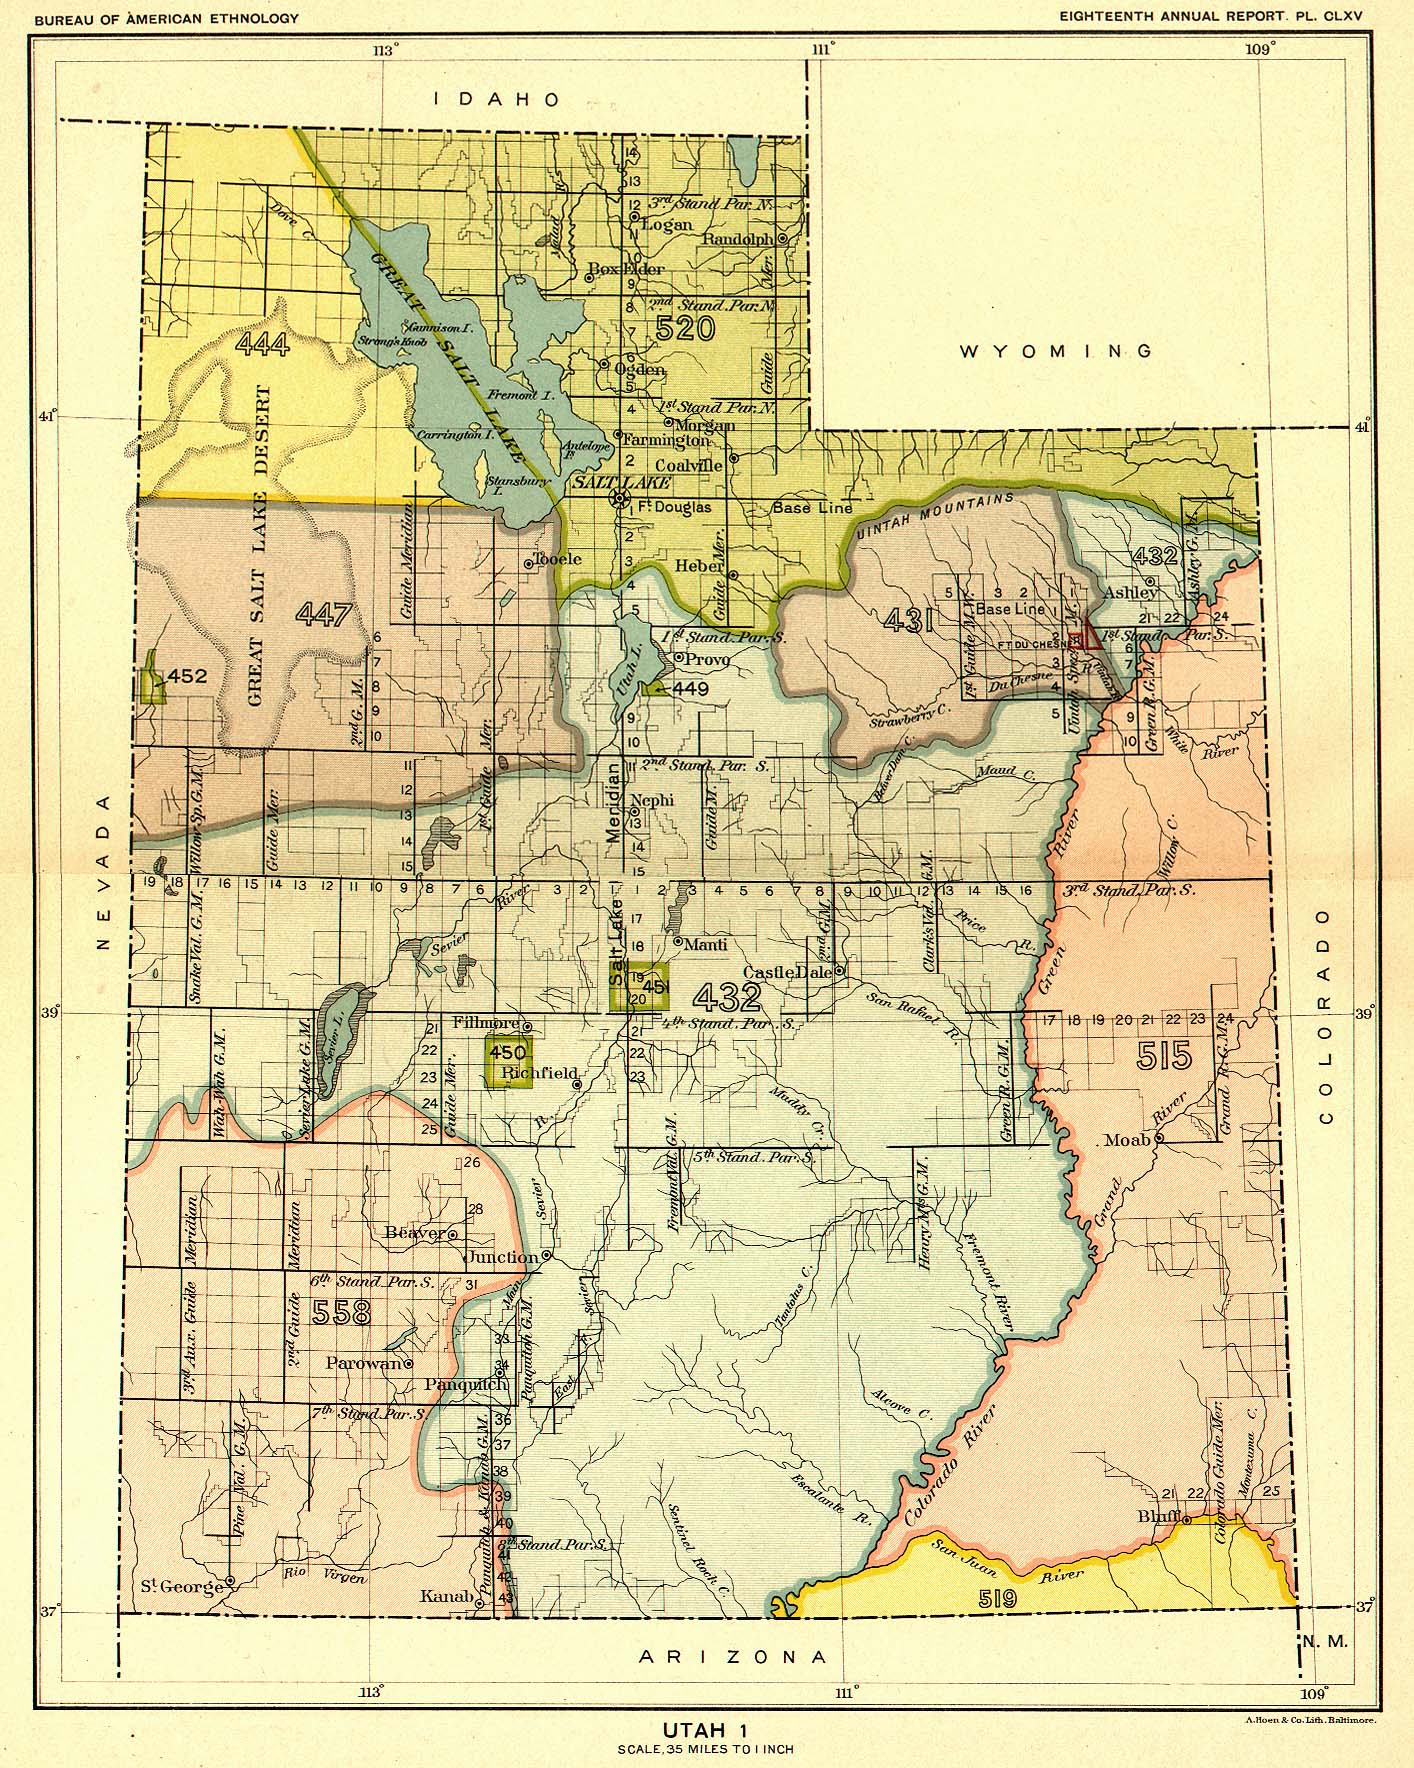 Utah 1, Map 58